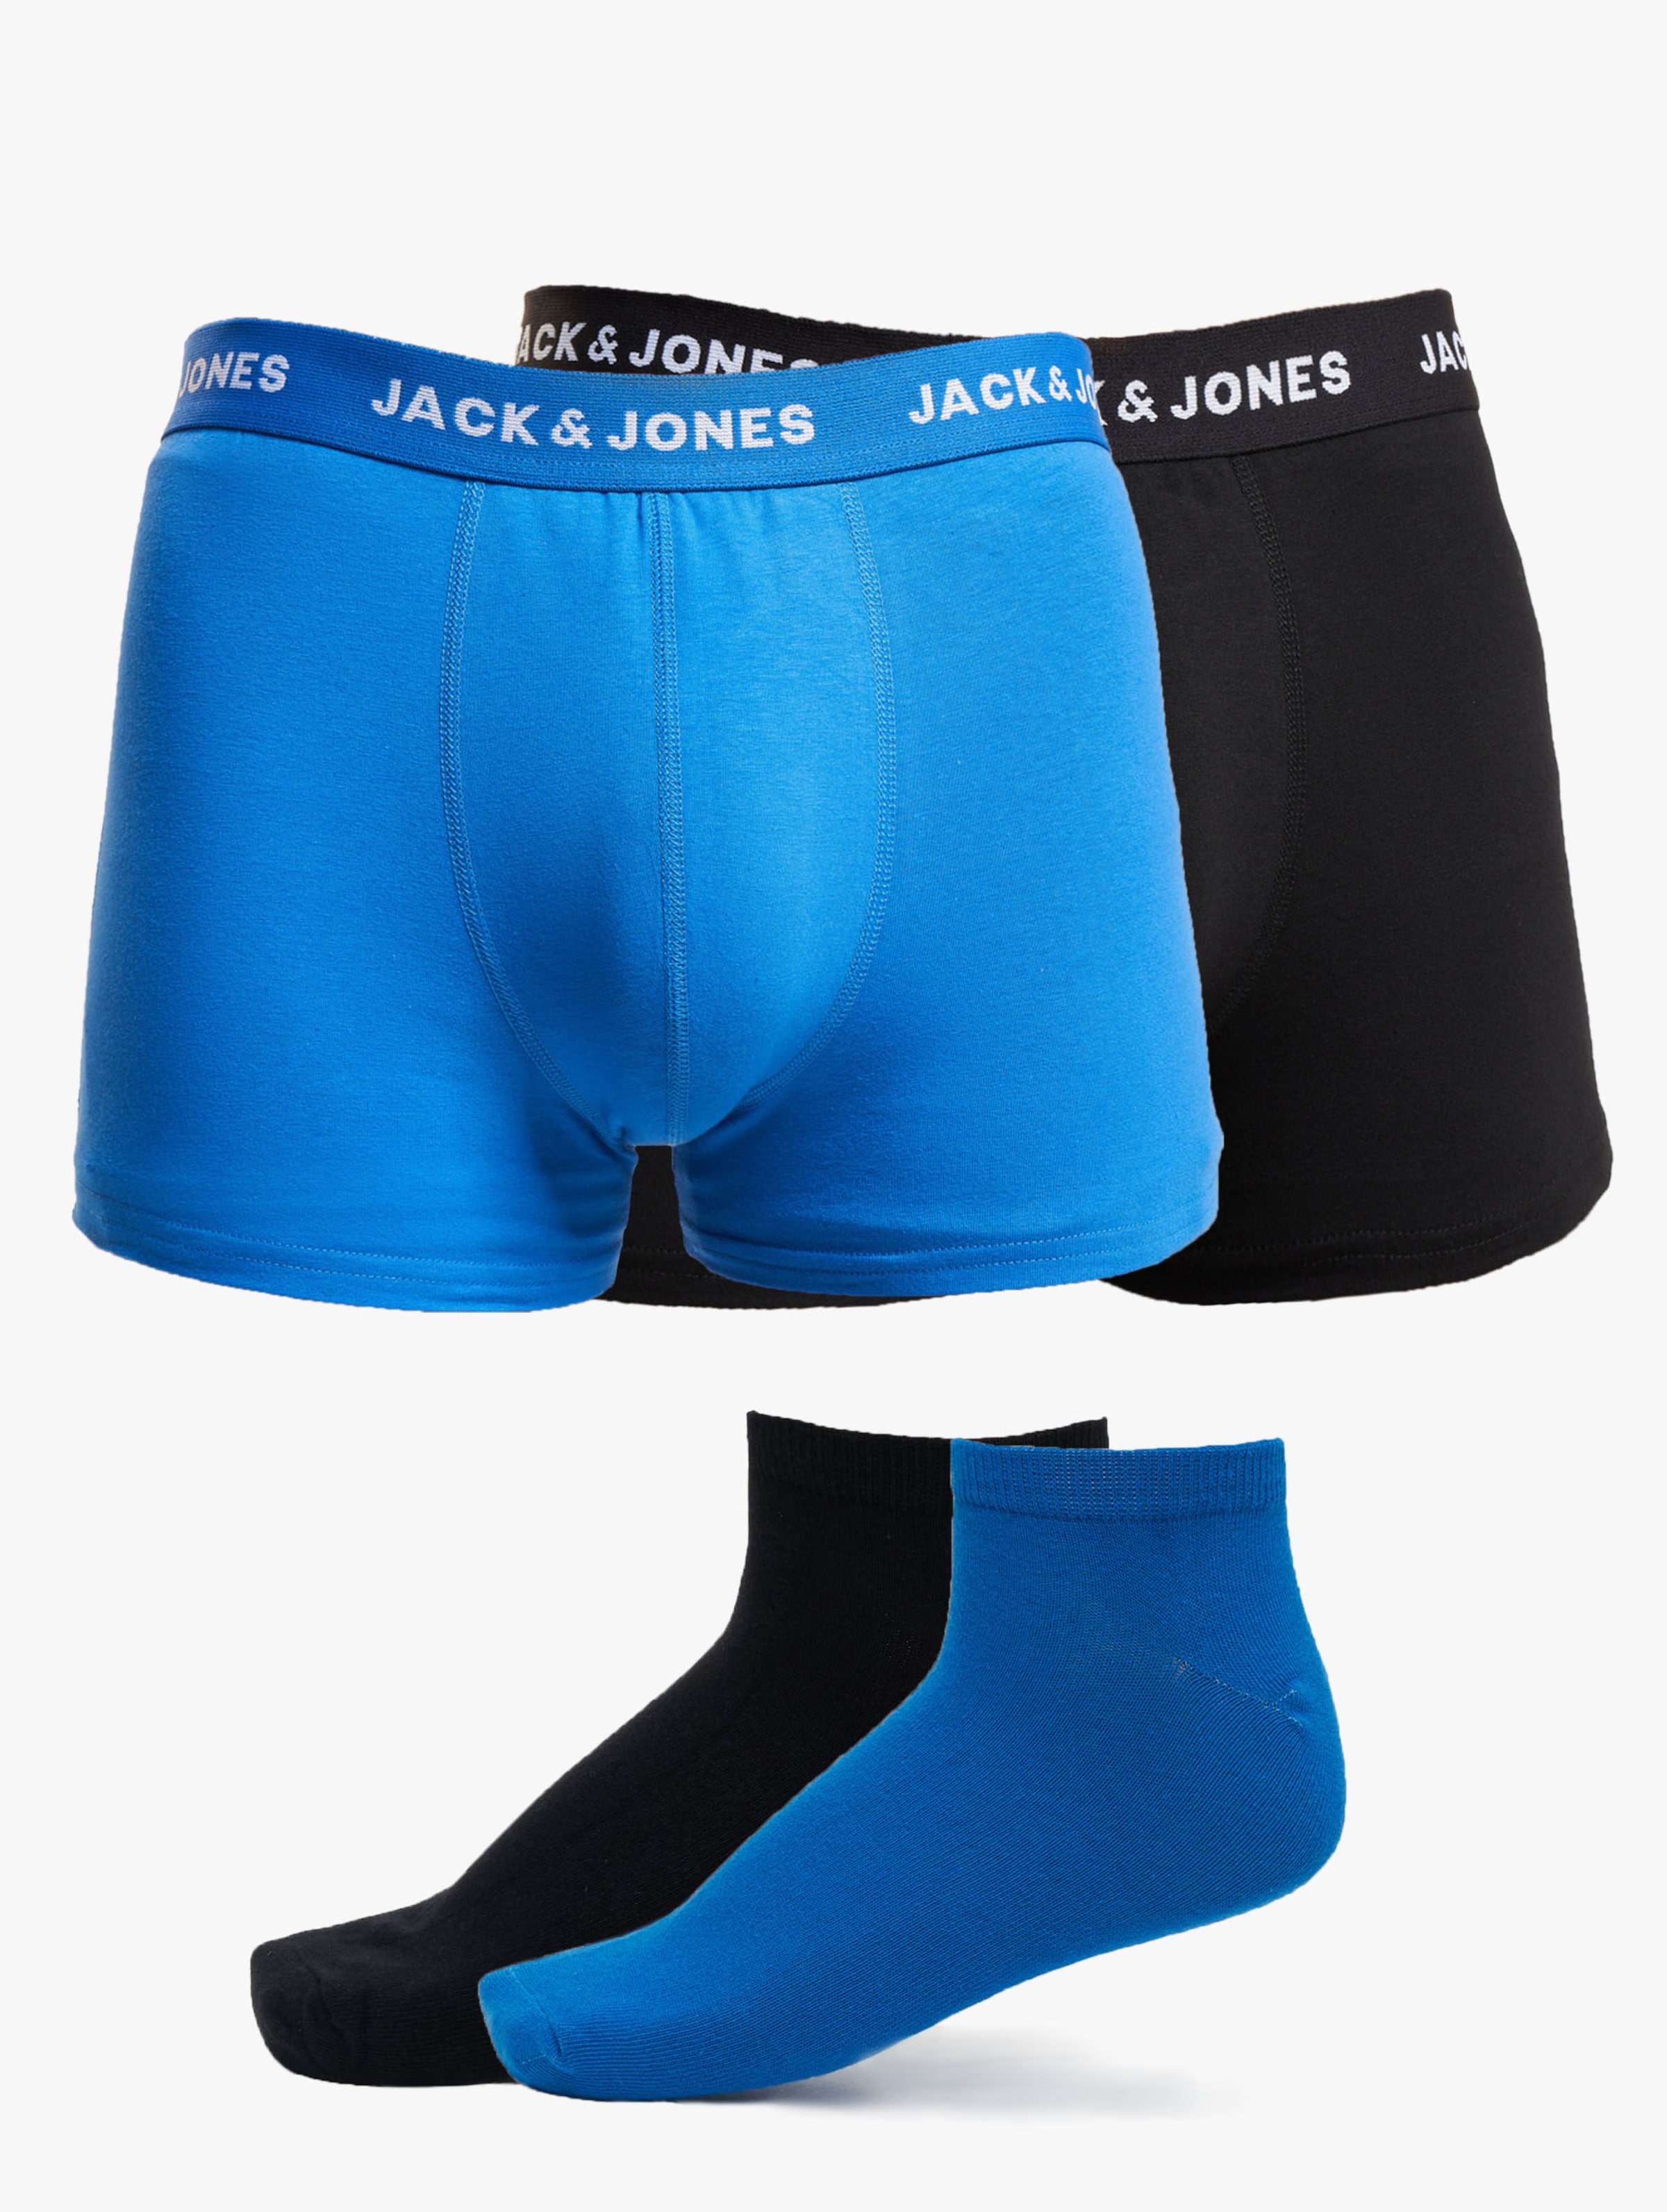 JACK & JONES Jacdavid solid weekendset (2+2-pack) - heren boxers en enkelsokken - kobalt blauw en zwart - Maat: XL